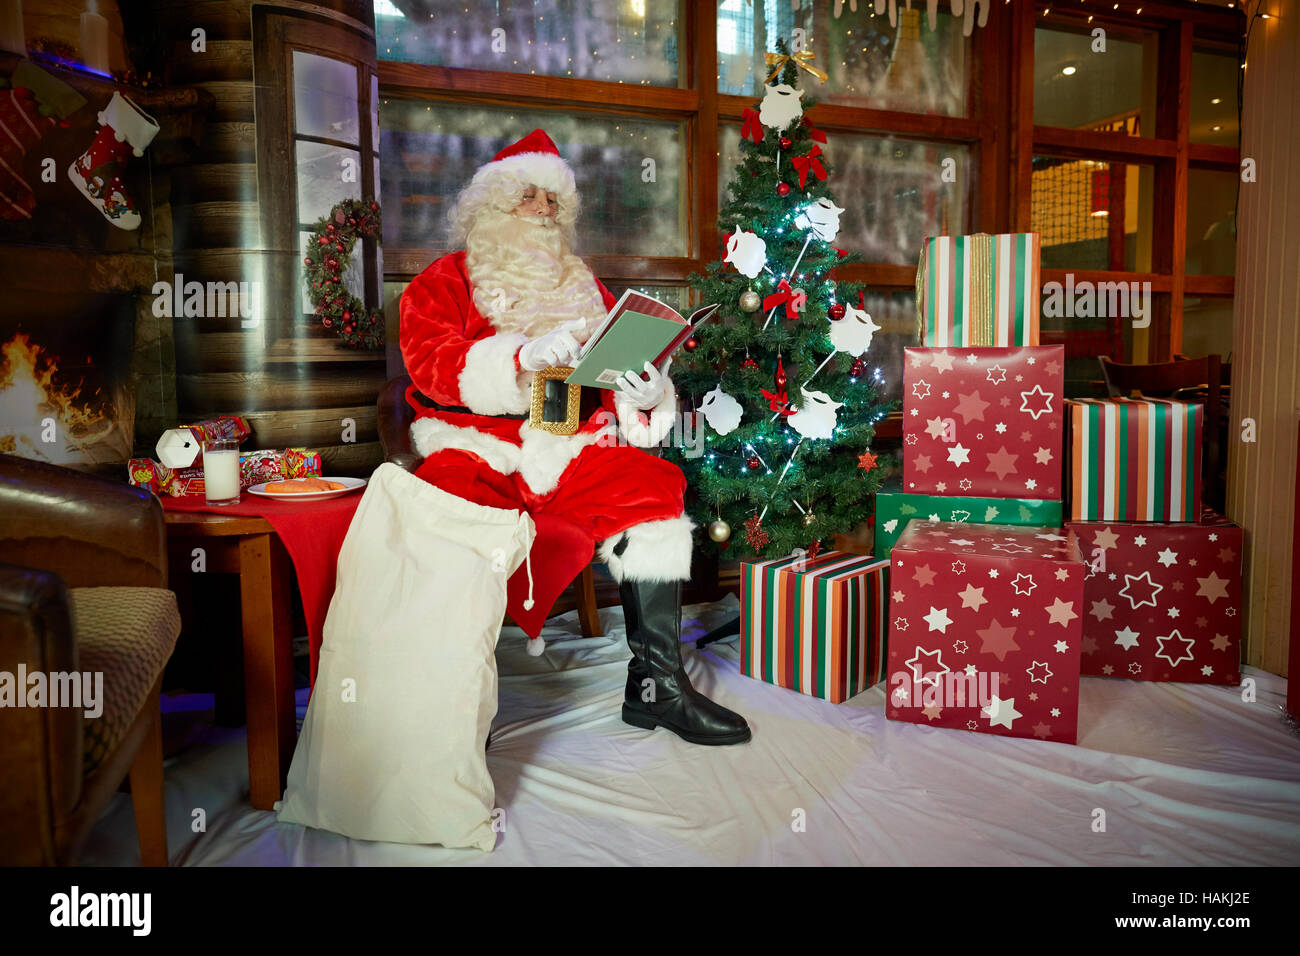 Grotte Santa en affichage de noël arbre de Noël illuminé, présente,cheminée,bas lecture enveloppé doués bon costume rouge sac à pub Santa Cla Banque D'Images